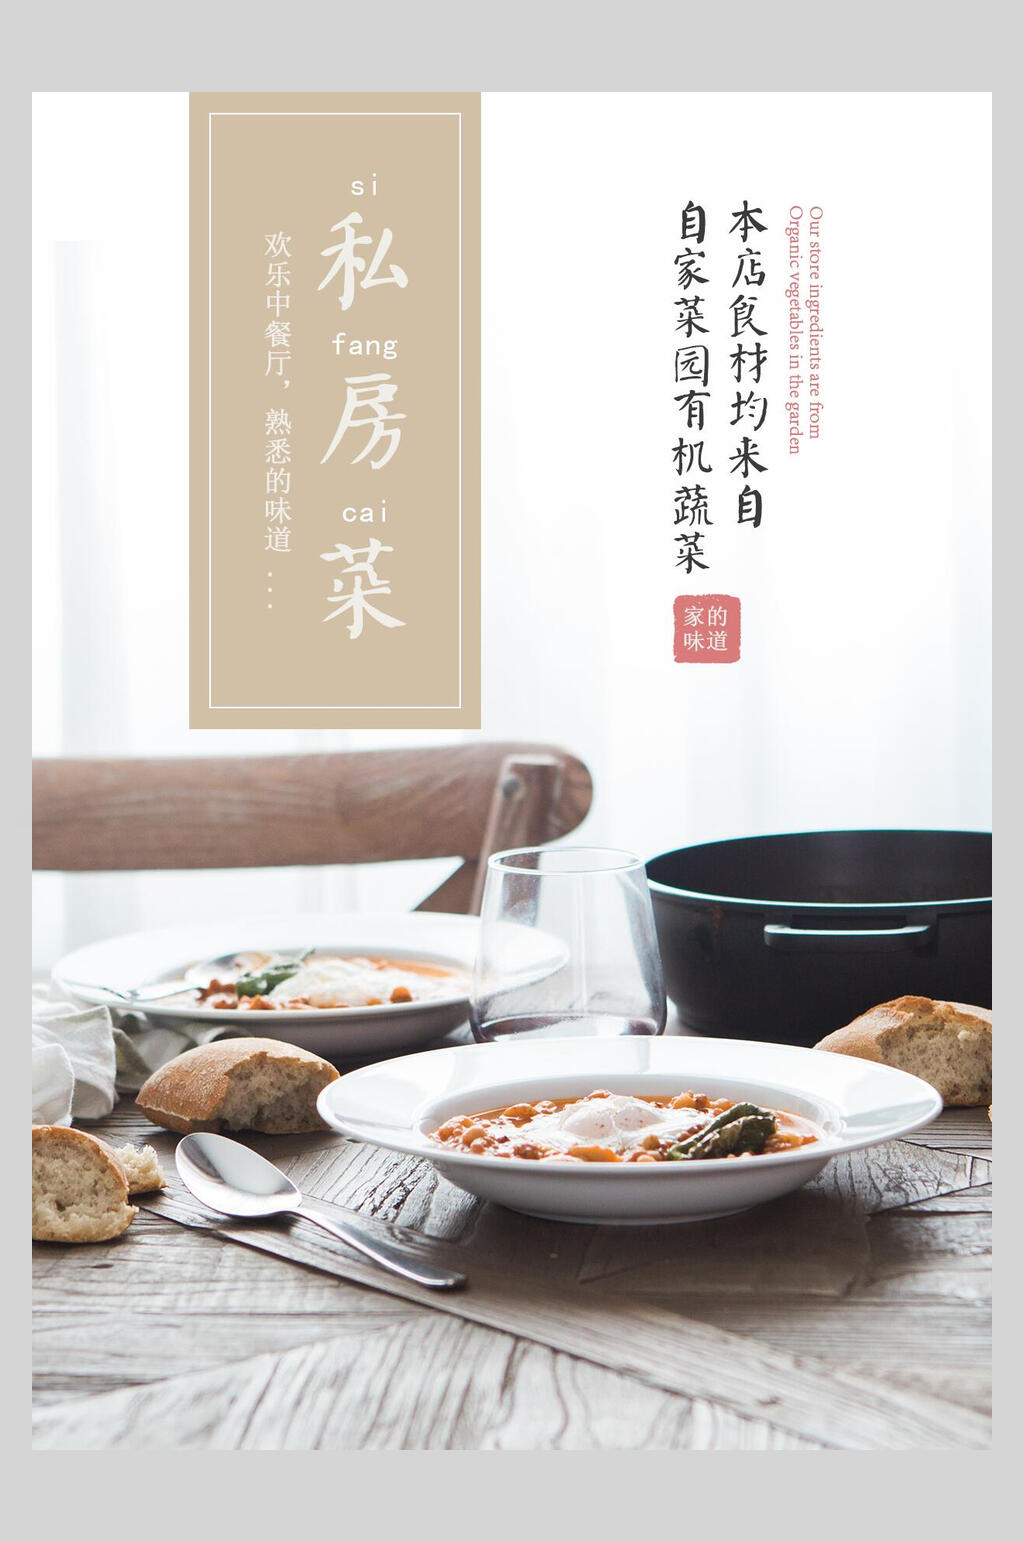 私房菜简约中式菜单海报素材